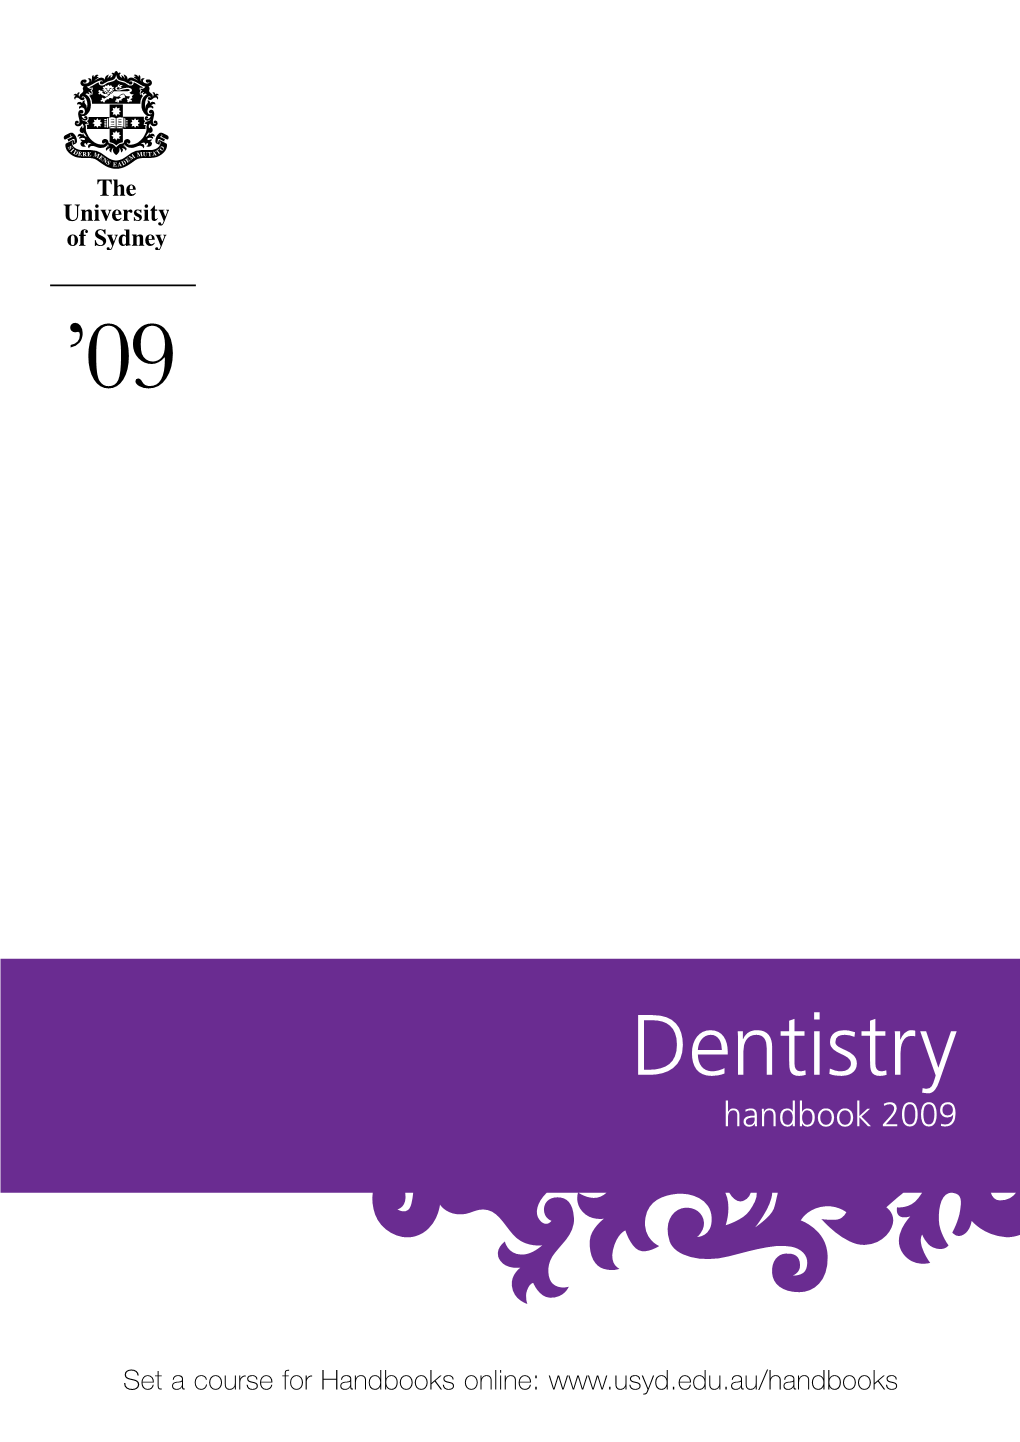 Dentistry Handbook 2009